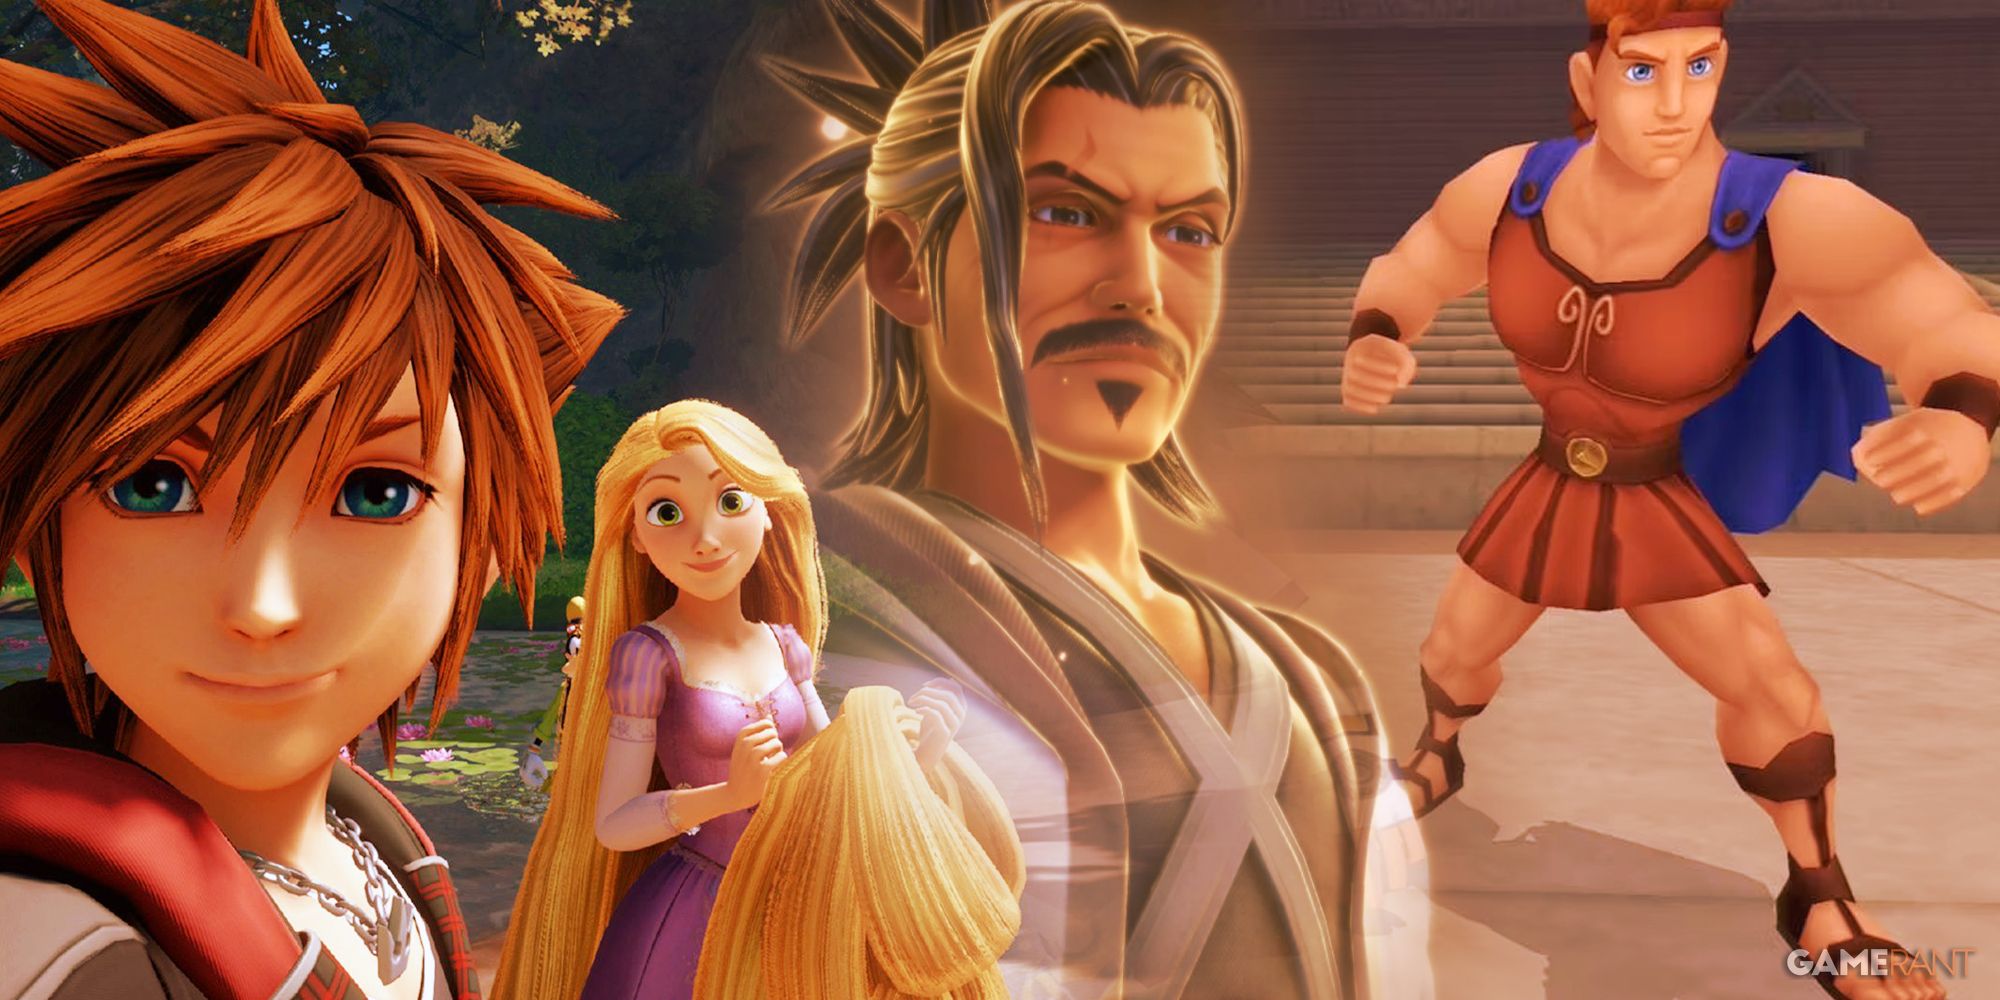 Kingdom Hearts characters Tangled Rapunzel, Master Eraqus, Hercules